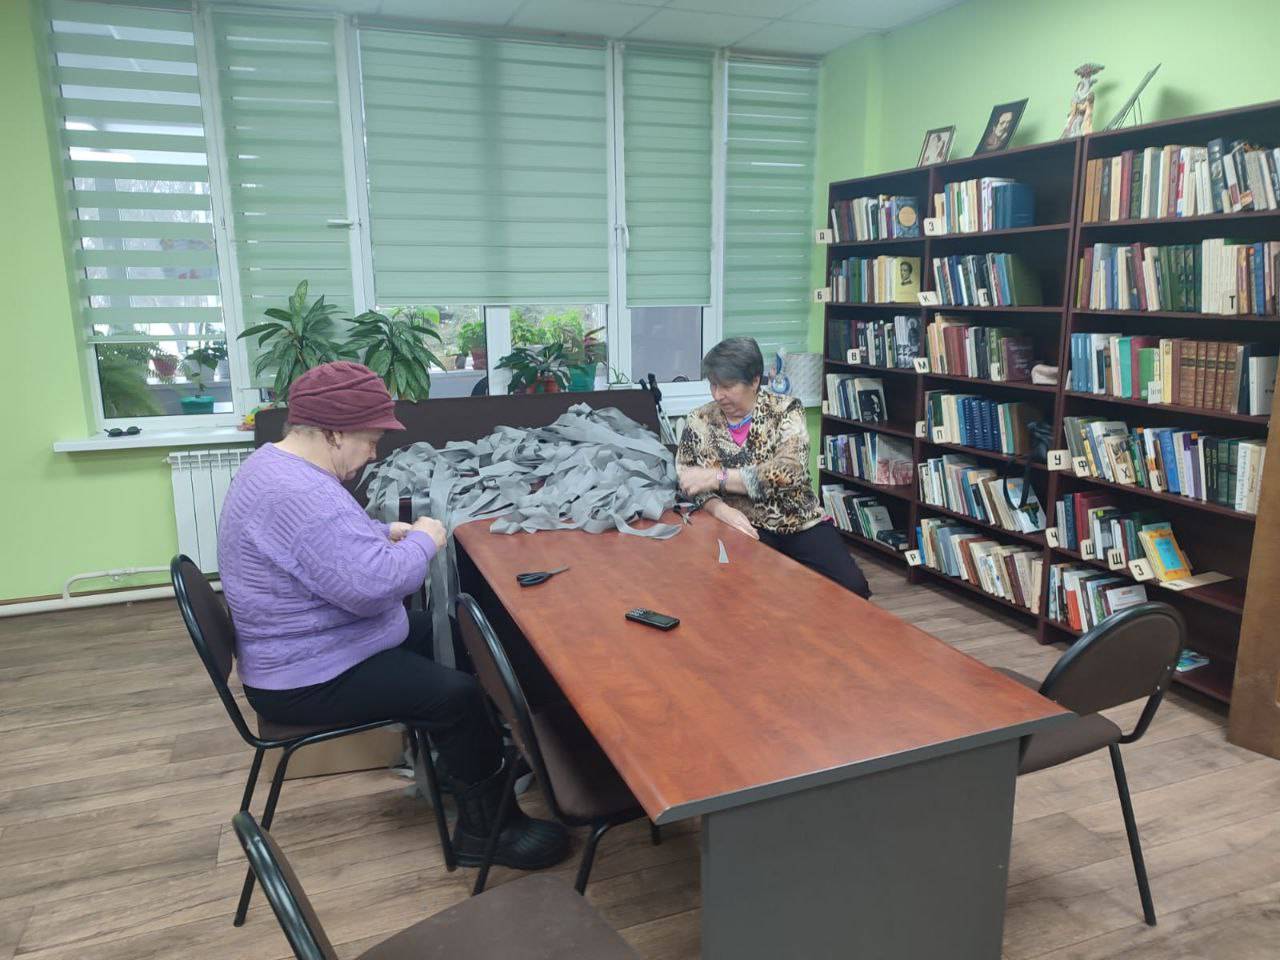 Мастер-класс по плетению маскировочных сетей прошел в библиотеке ДК «Юбилейный» Роговского